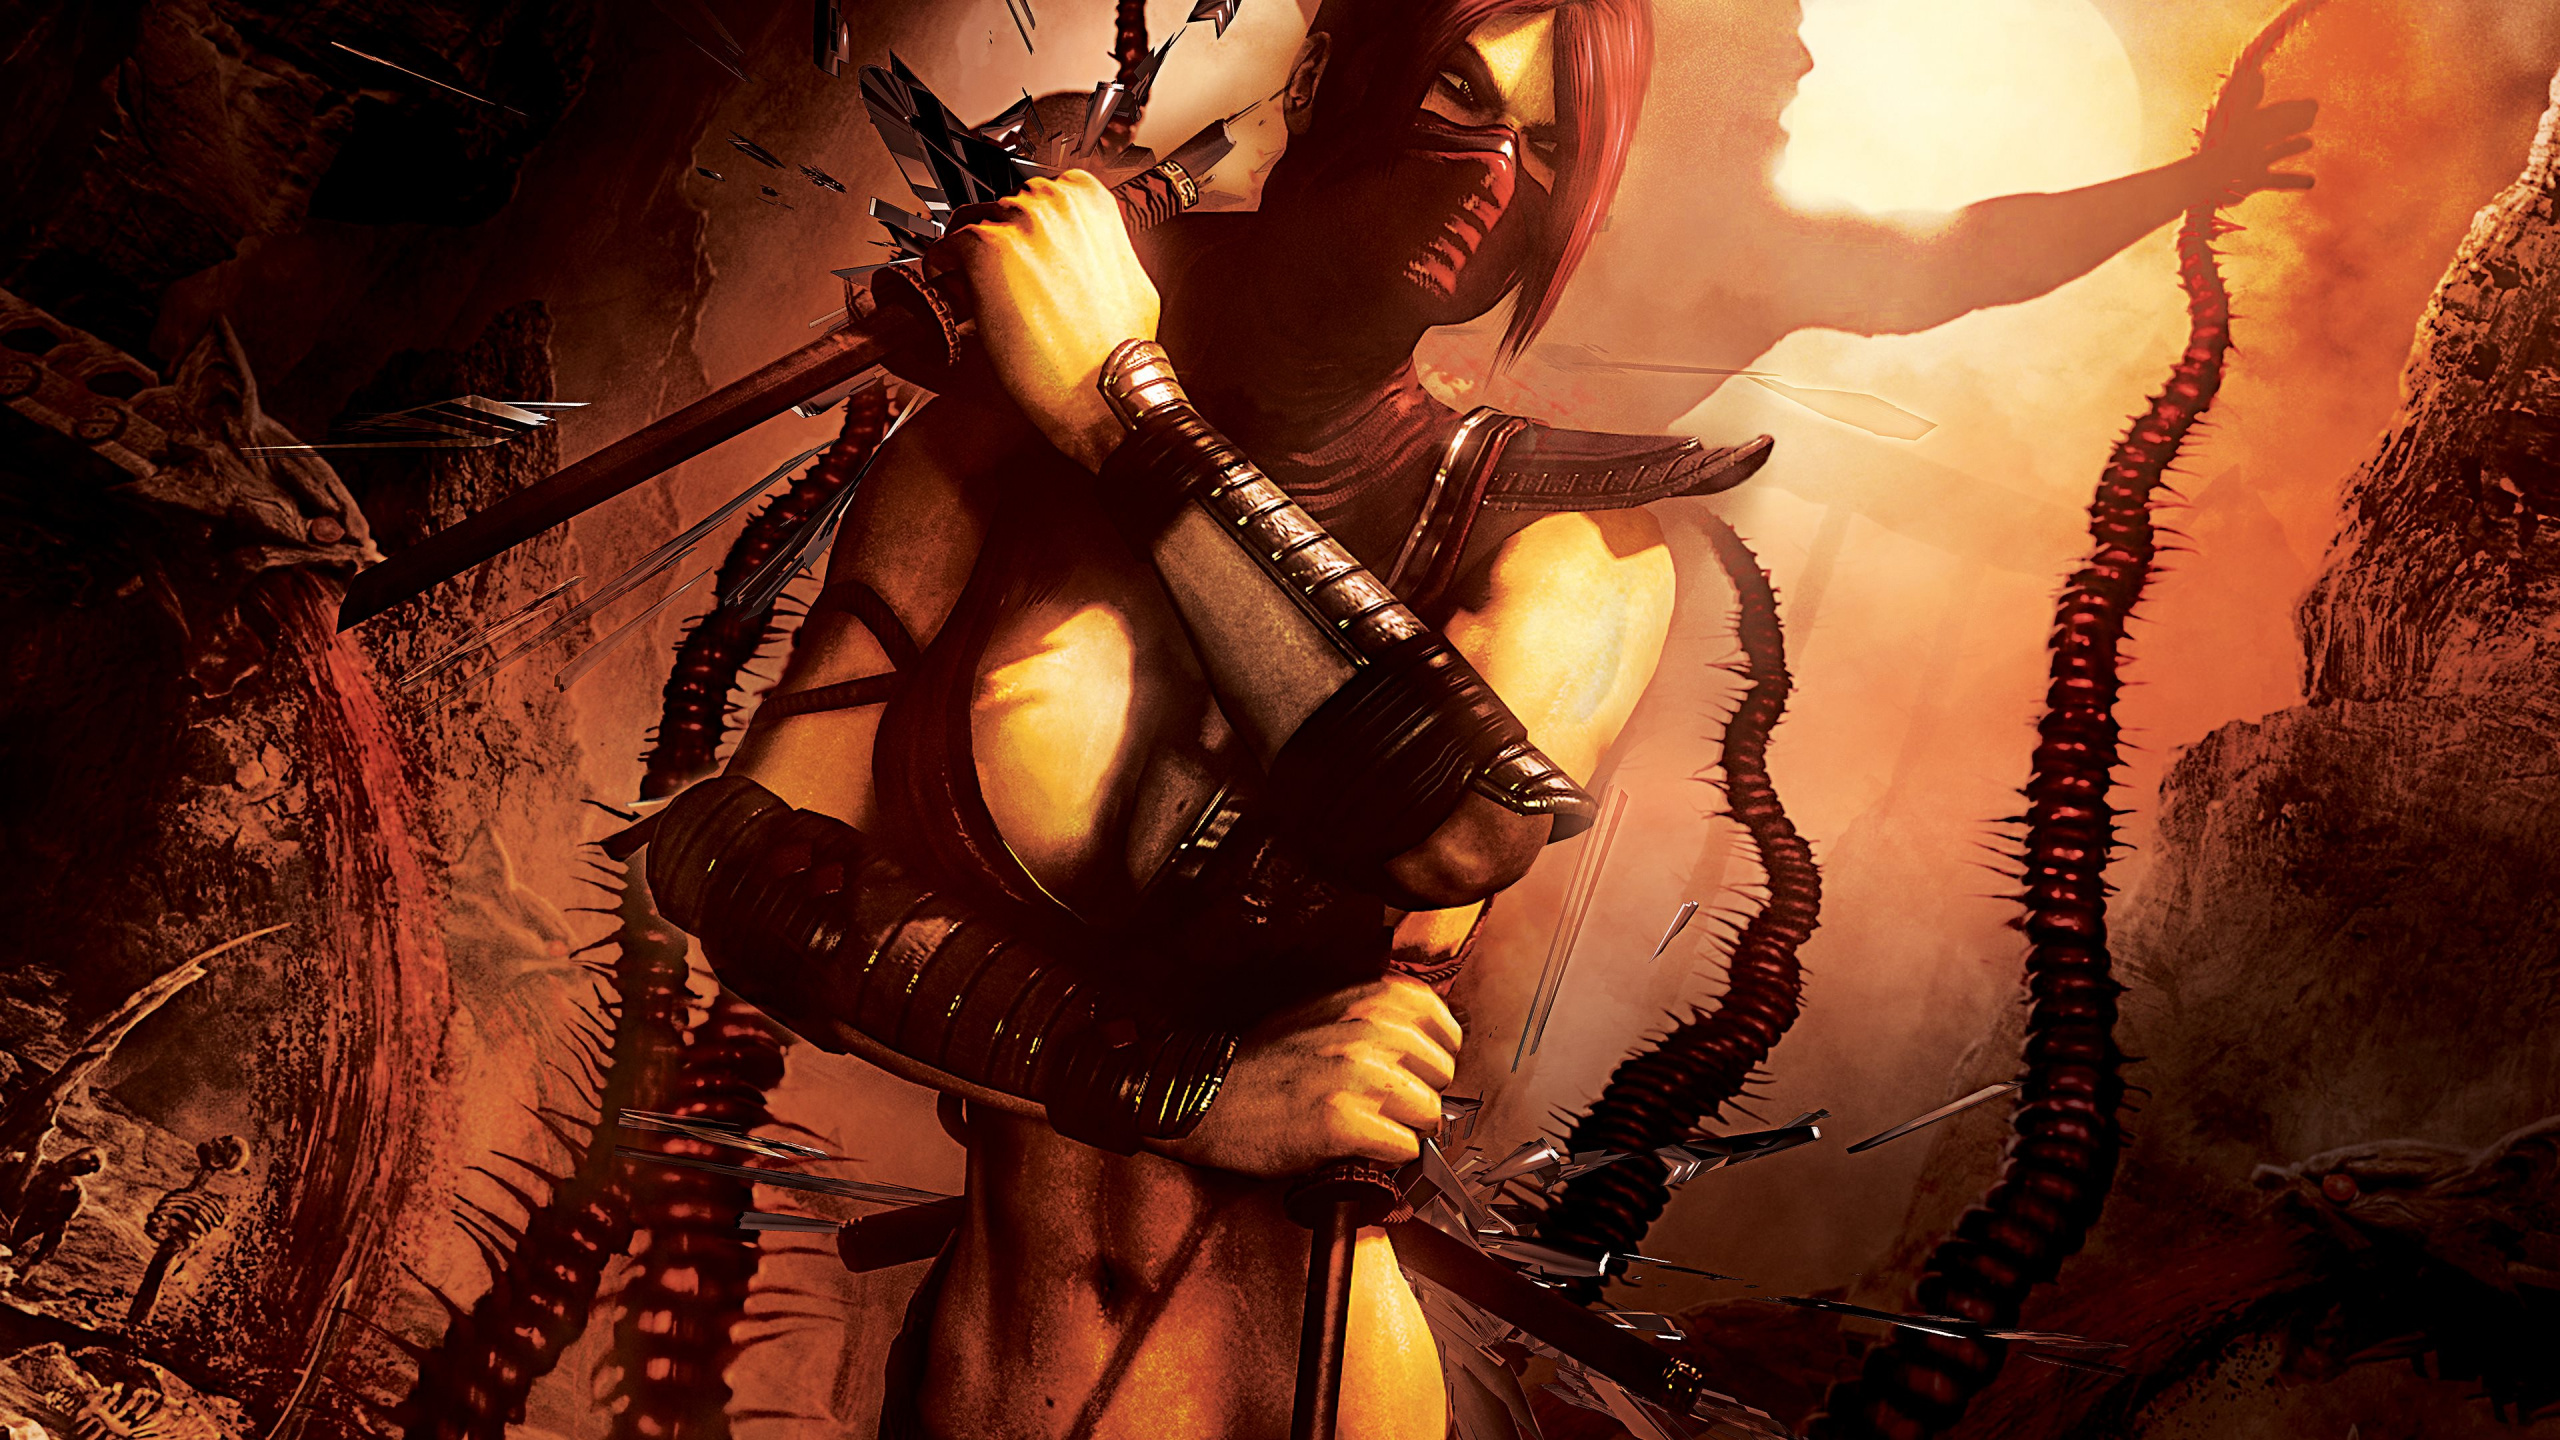 Mortal Kombat, Mortal Kombat x, Mortal Kombat 11, Écarlate, Femme de Guerrier. Wallpaper in 2560x1440 Resolution